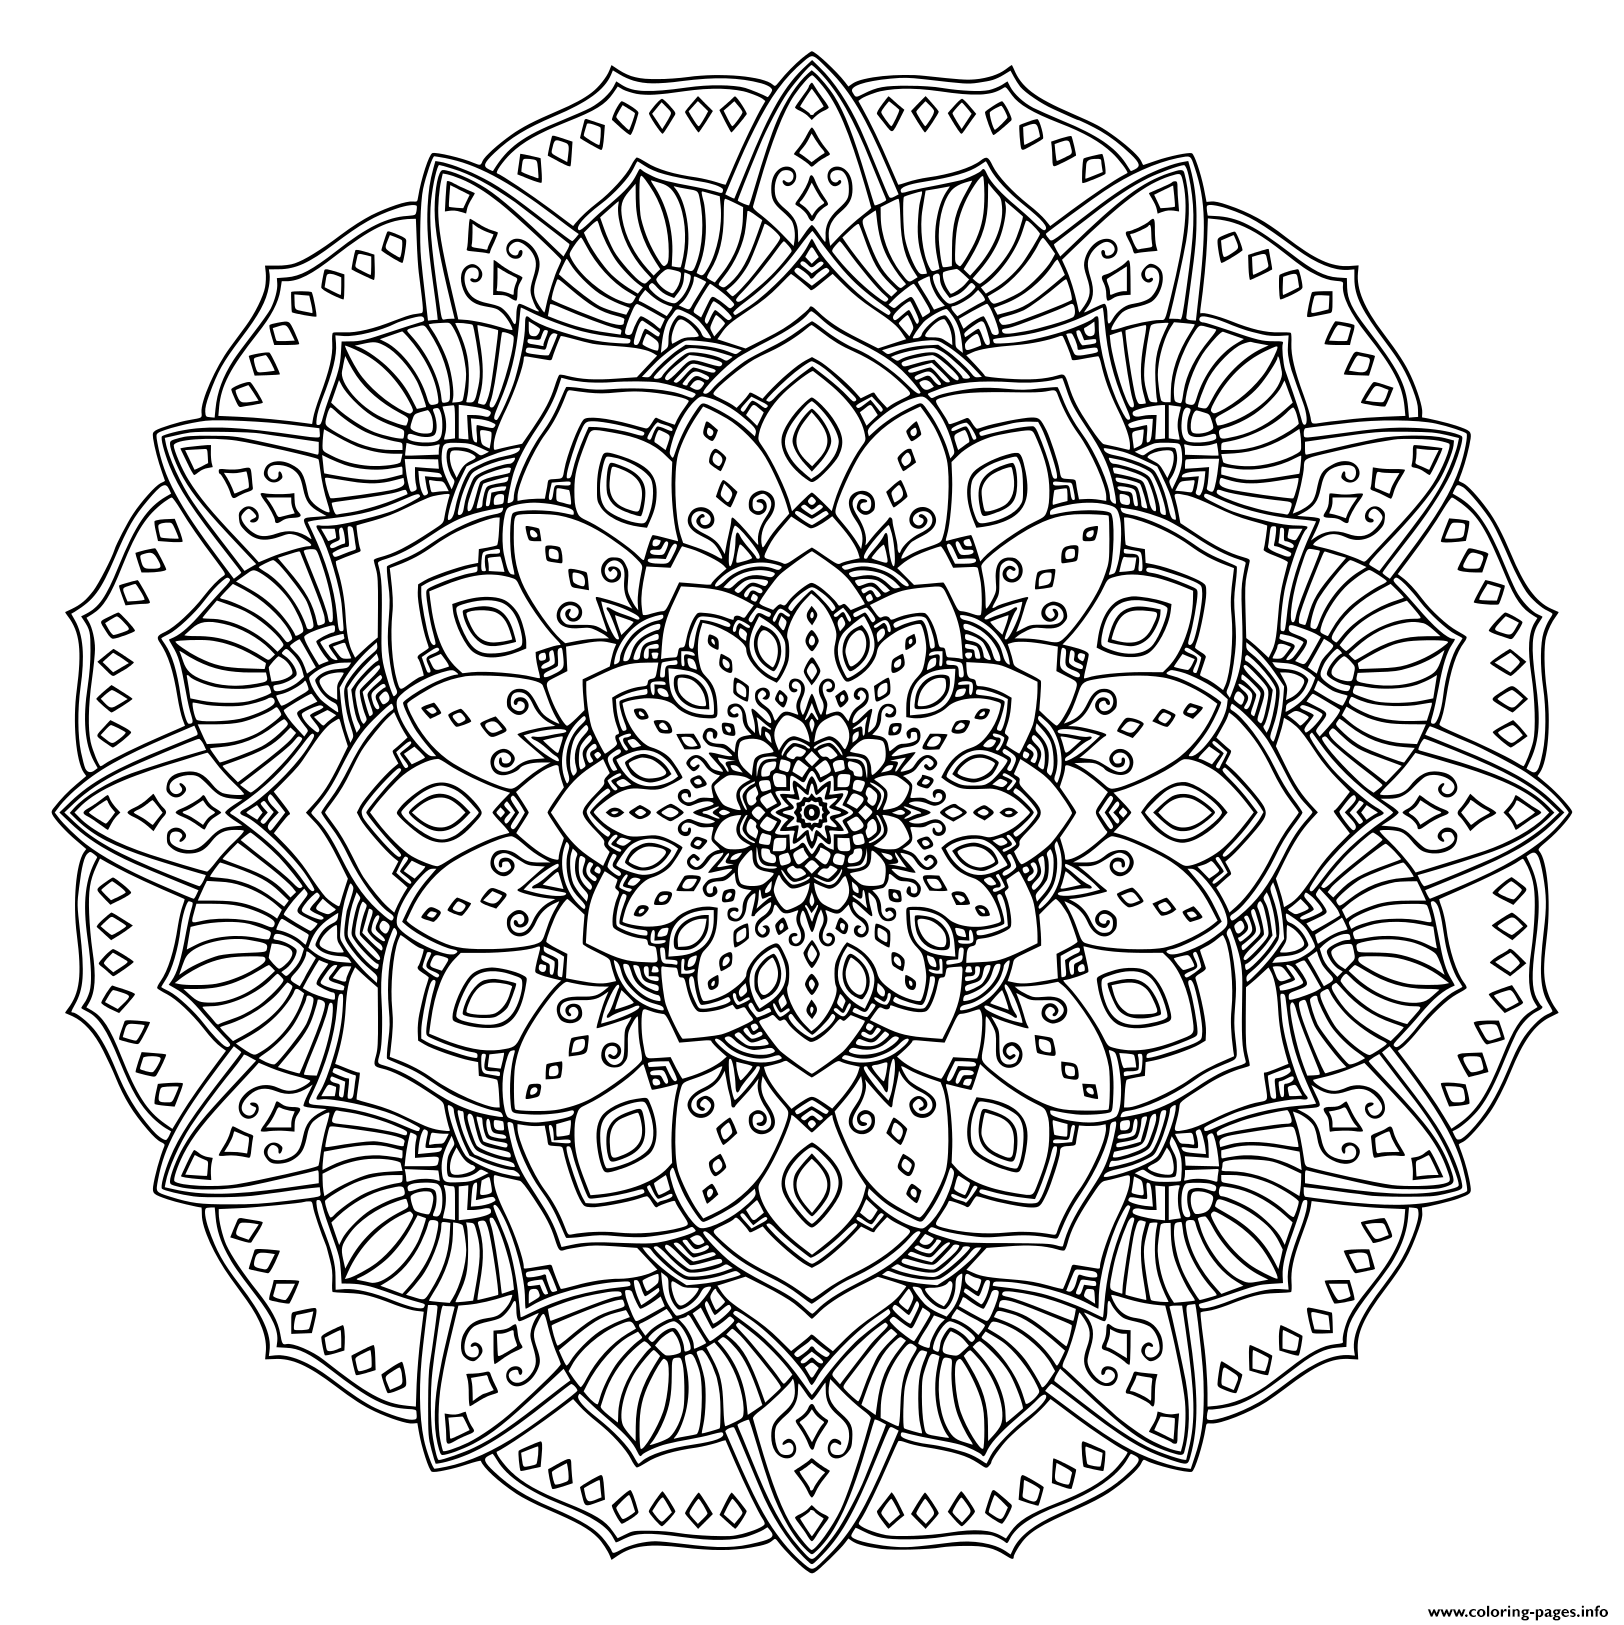 Intricate Black Mandala coloring